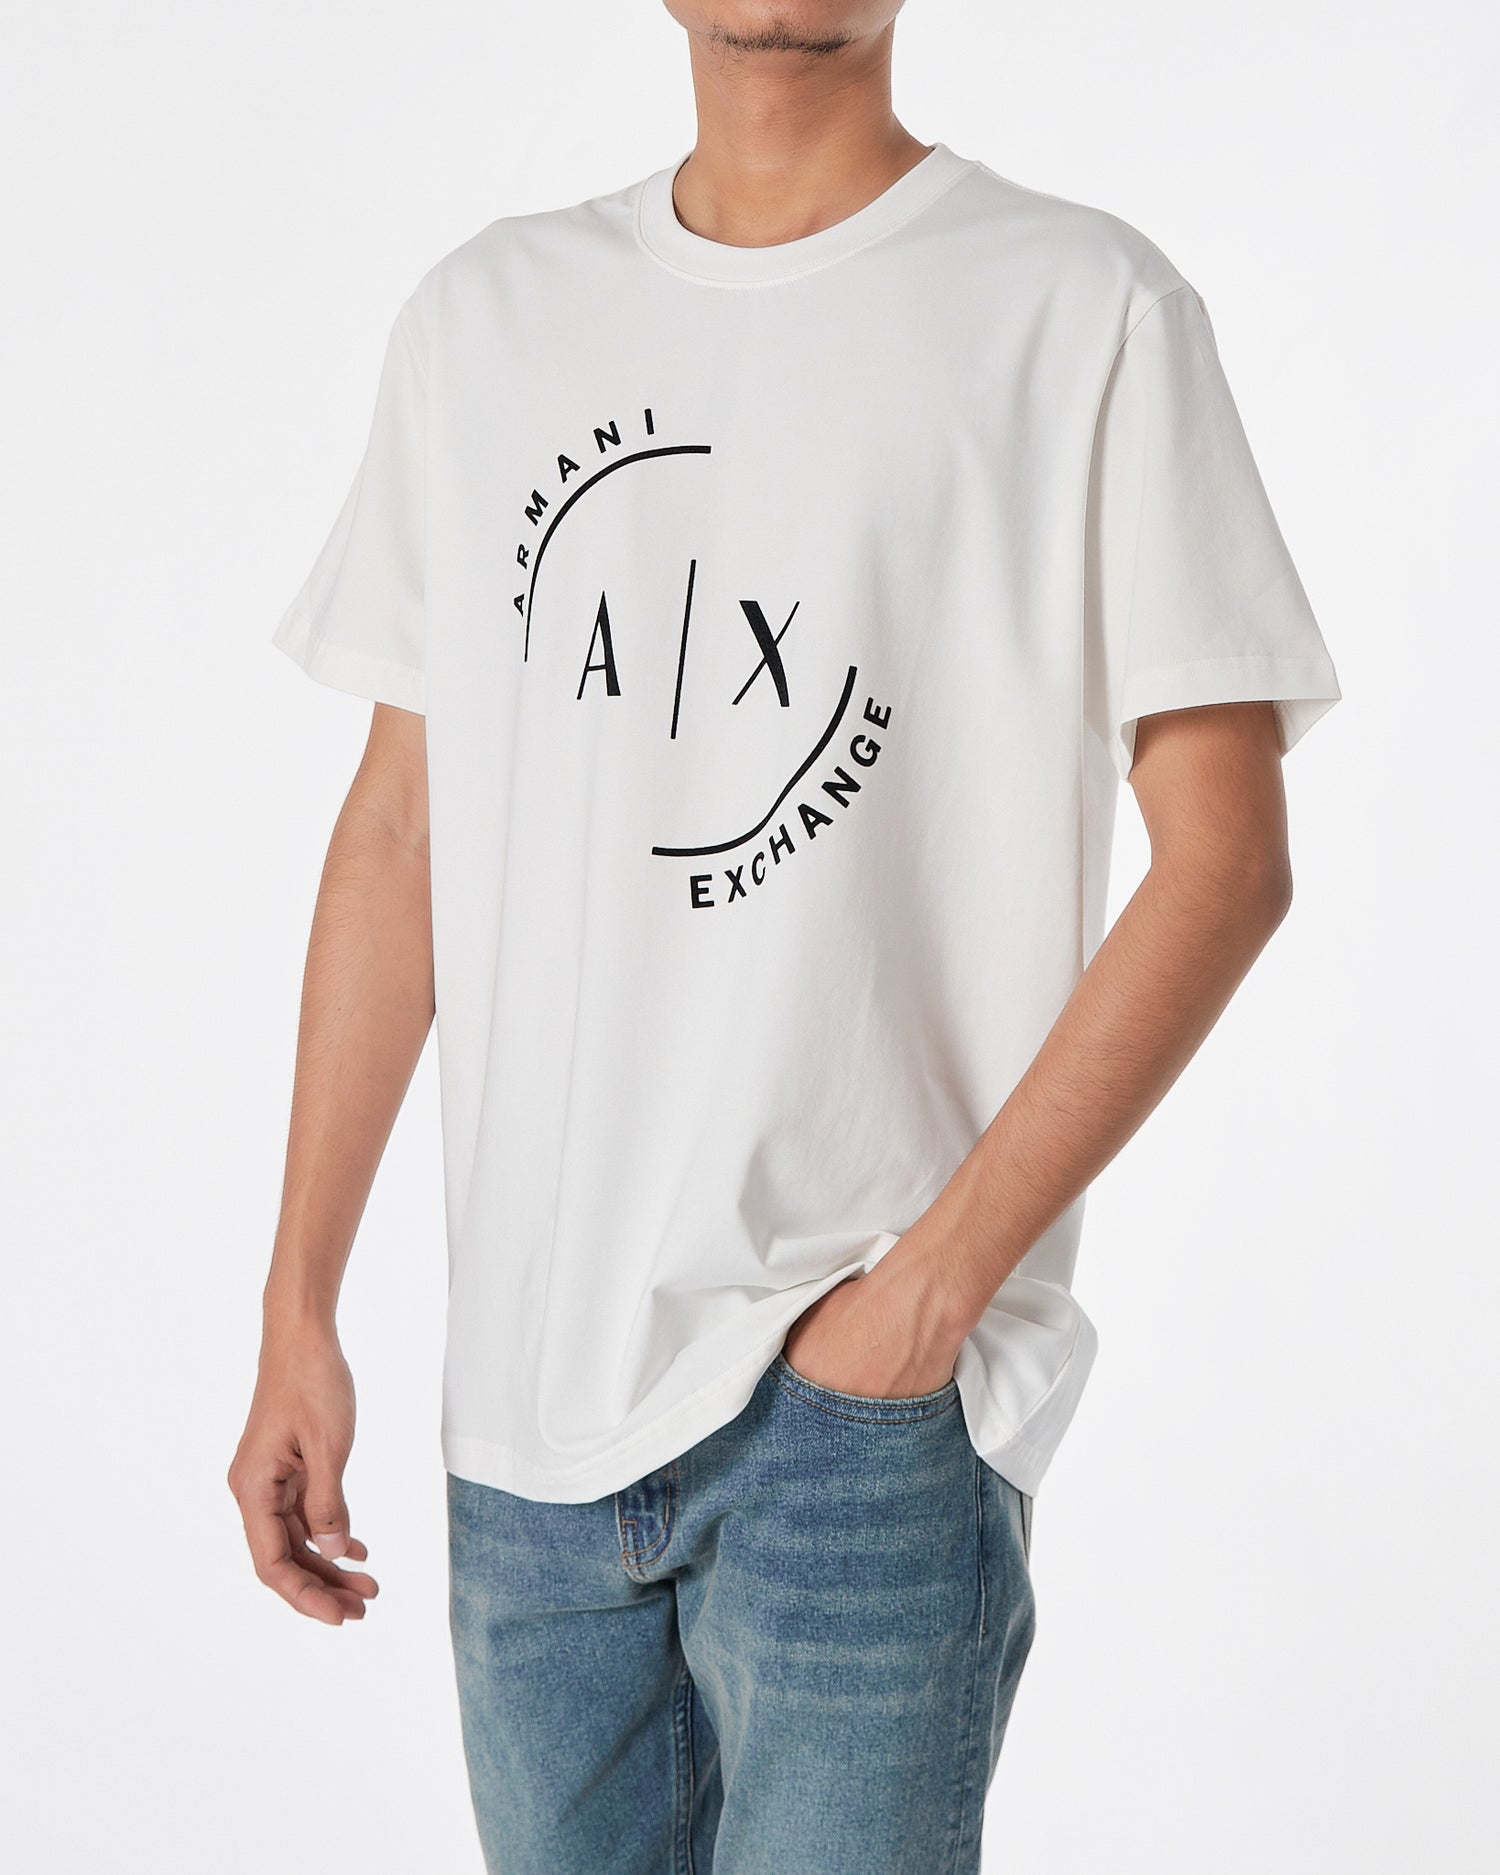 ARM Velvet Logo Printed Men White T-Shirt 16.90